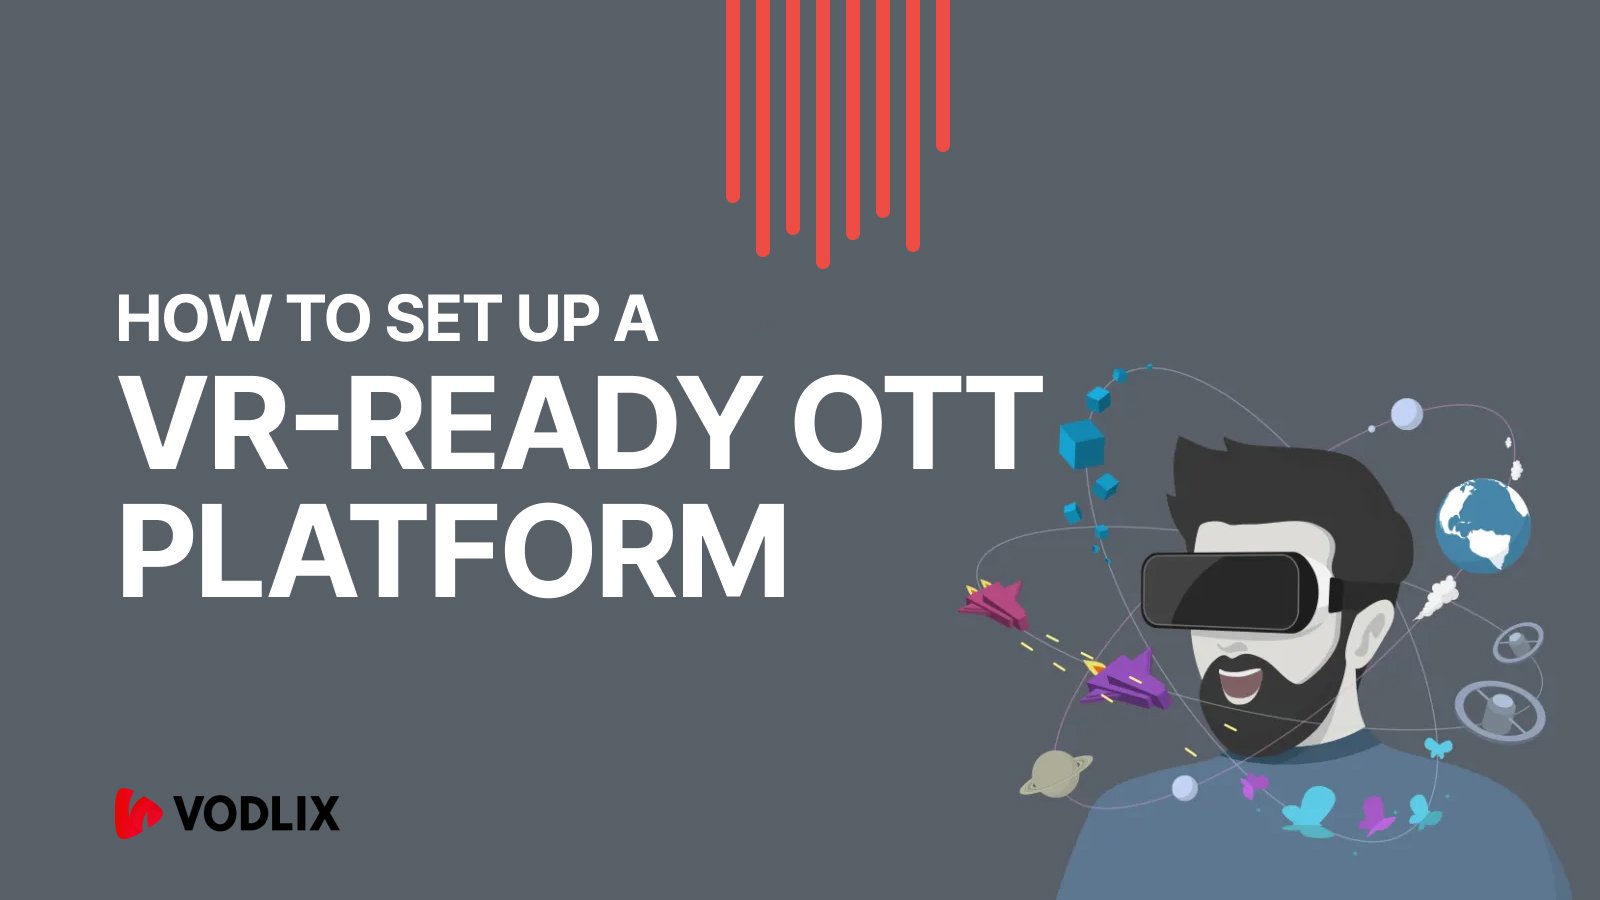 VR-ready OTT Platform